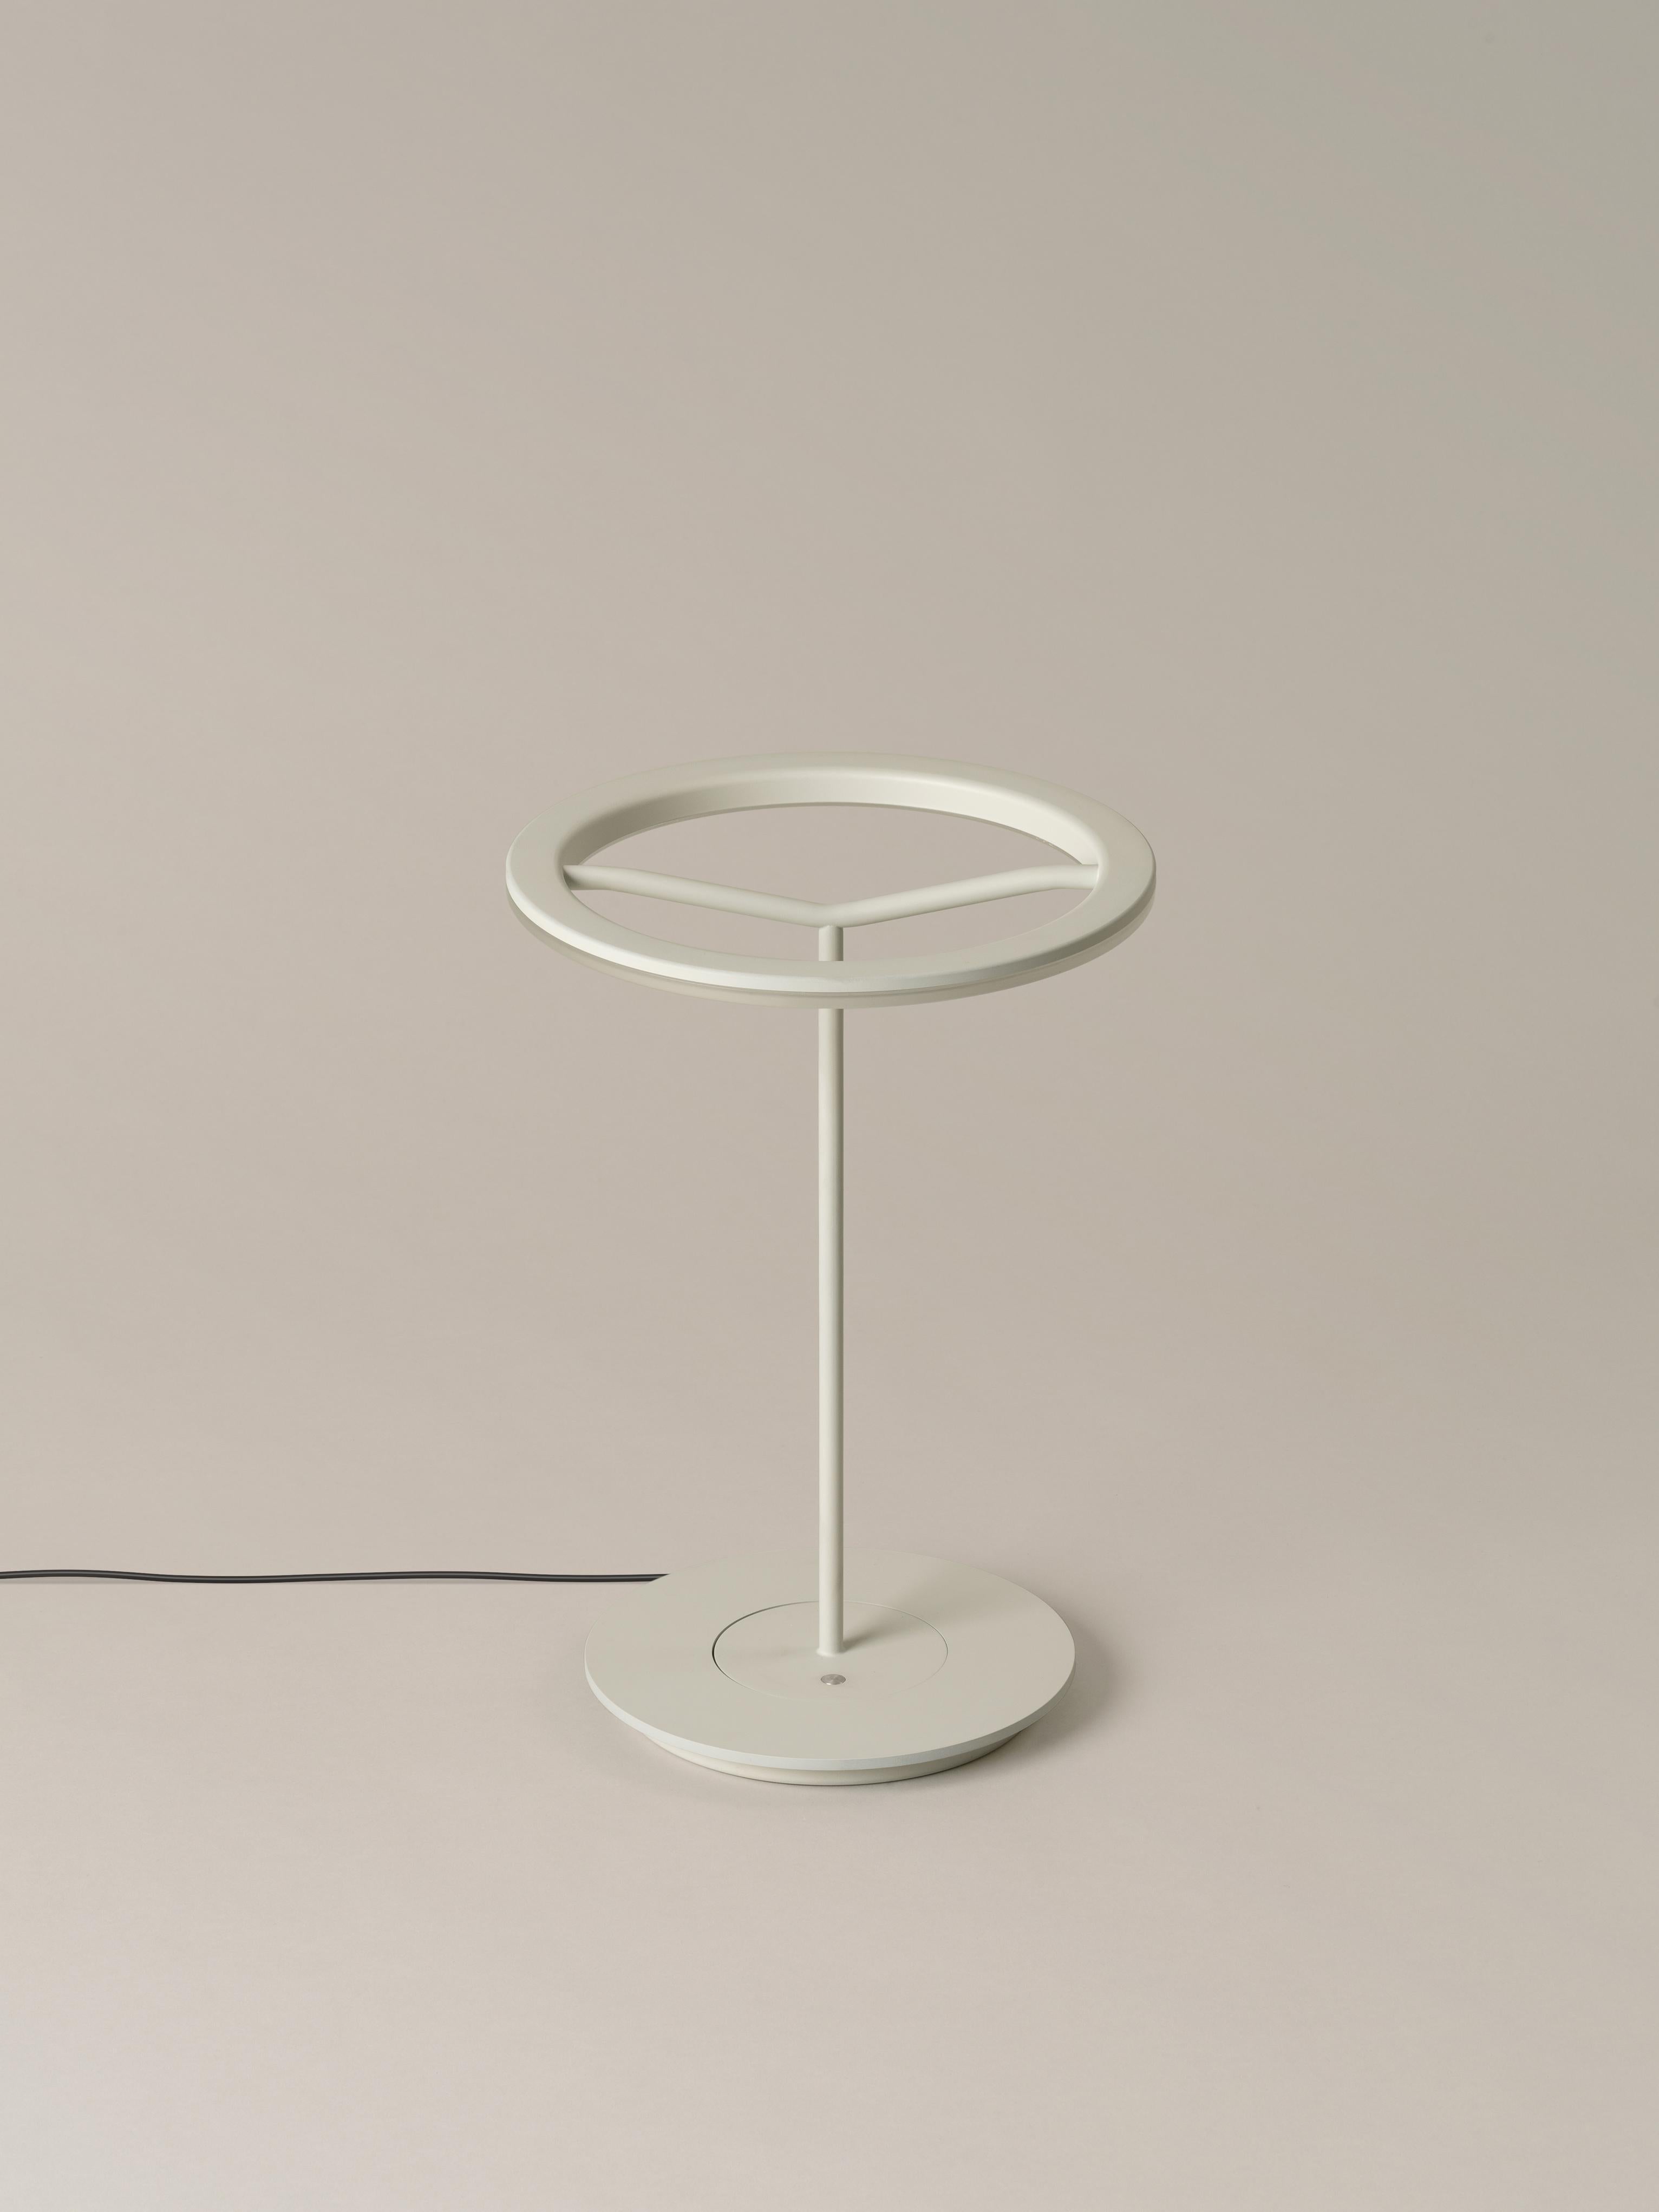 Kleine weiße sündige Tischlampe von Antoni Arola
Abmessungen: D 25 x H 36 cm
MATERIALIEN: Metall.
Erhältlich in Weiß oder Graphit, mit oder ohne Schirm.

Eine Leuchte, die Einfachheit und Technologie verbindet, um einen leuchtenden, in der Luft